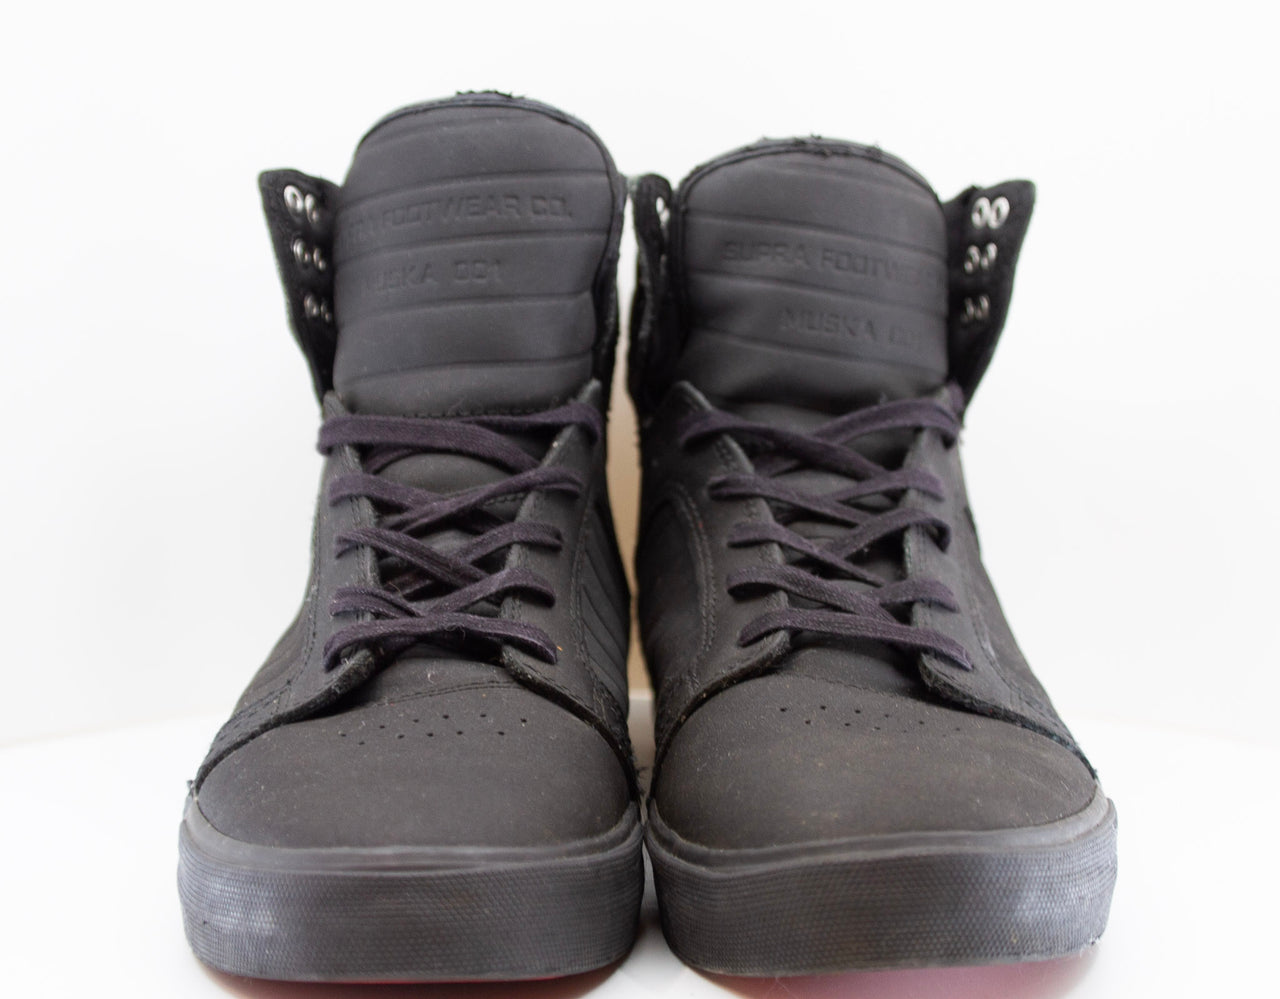 Supra Footwear Co. Muska 001 Black High Top Sneaker